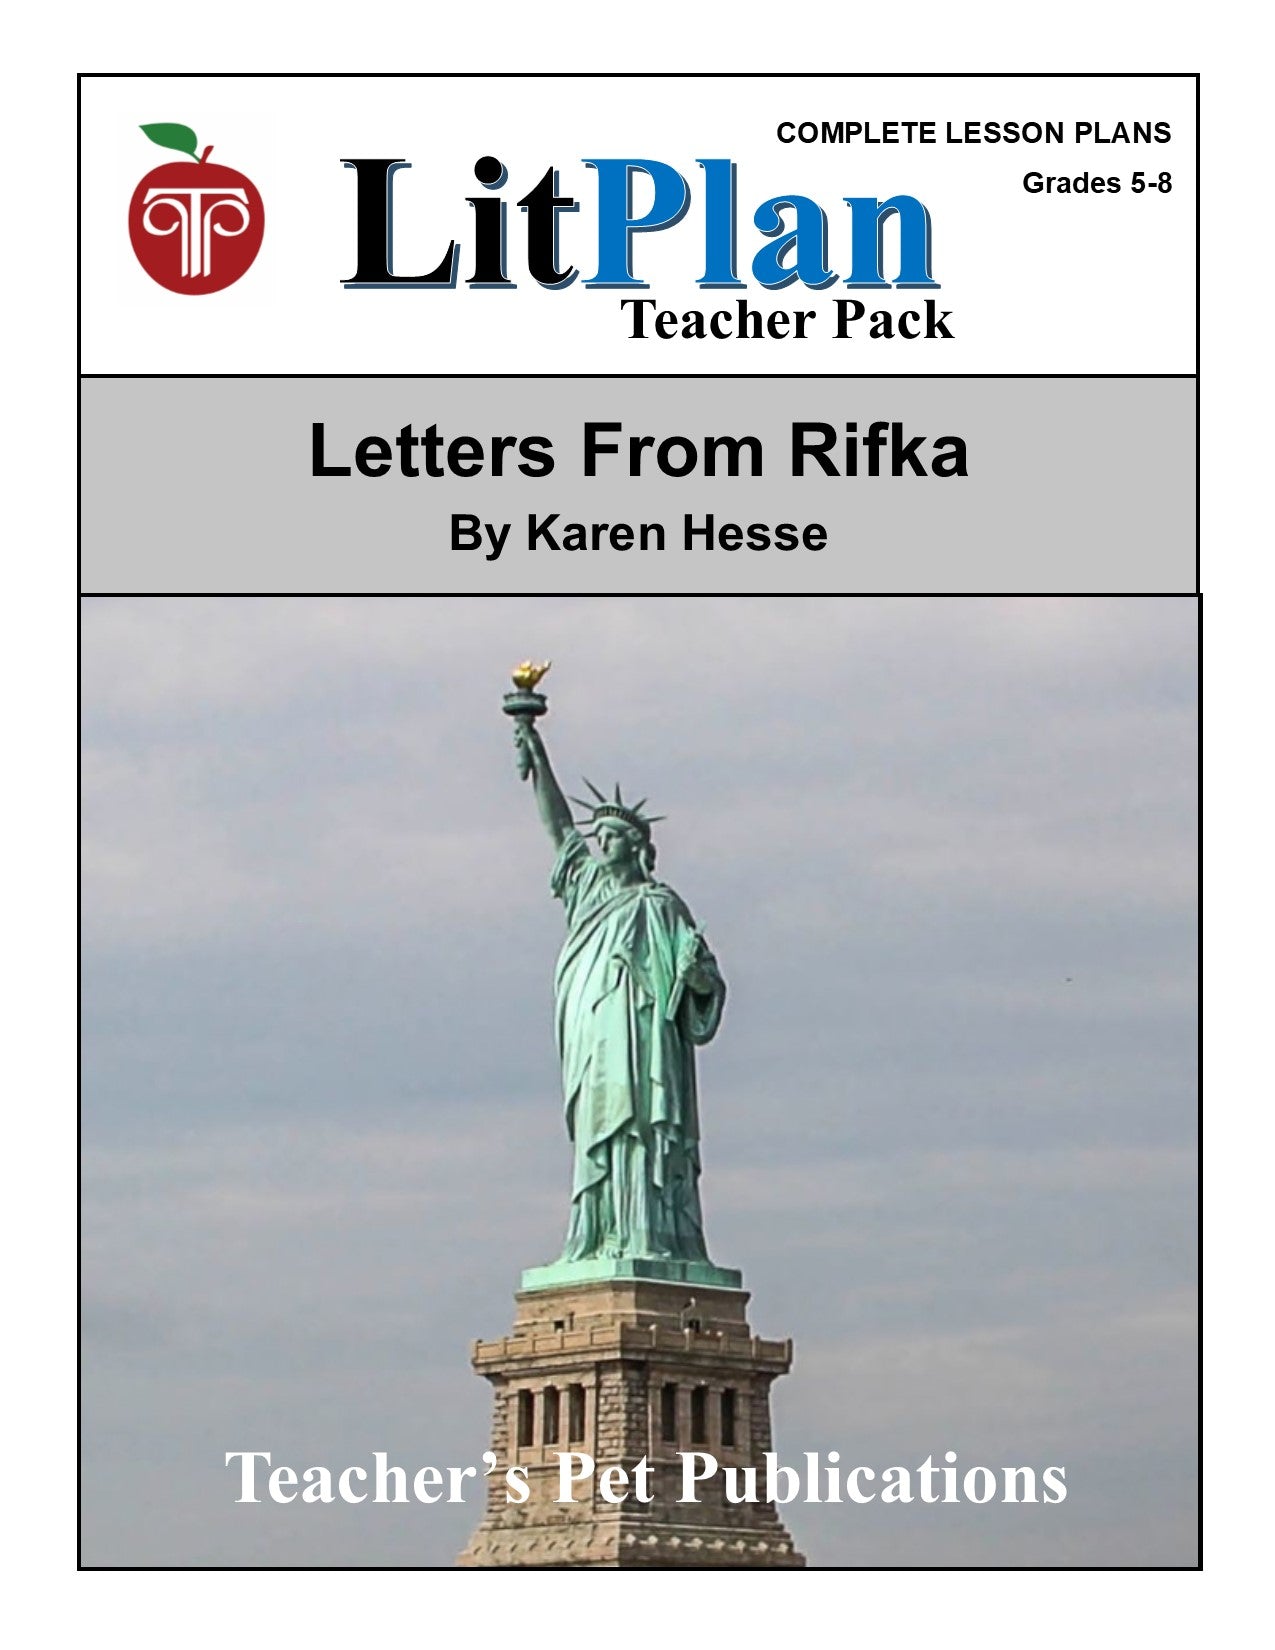 Letters From Rifka: LitPlan Teacher Pack Grades 5-8